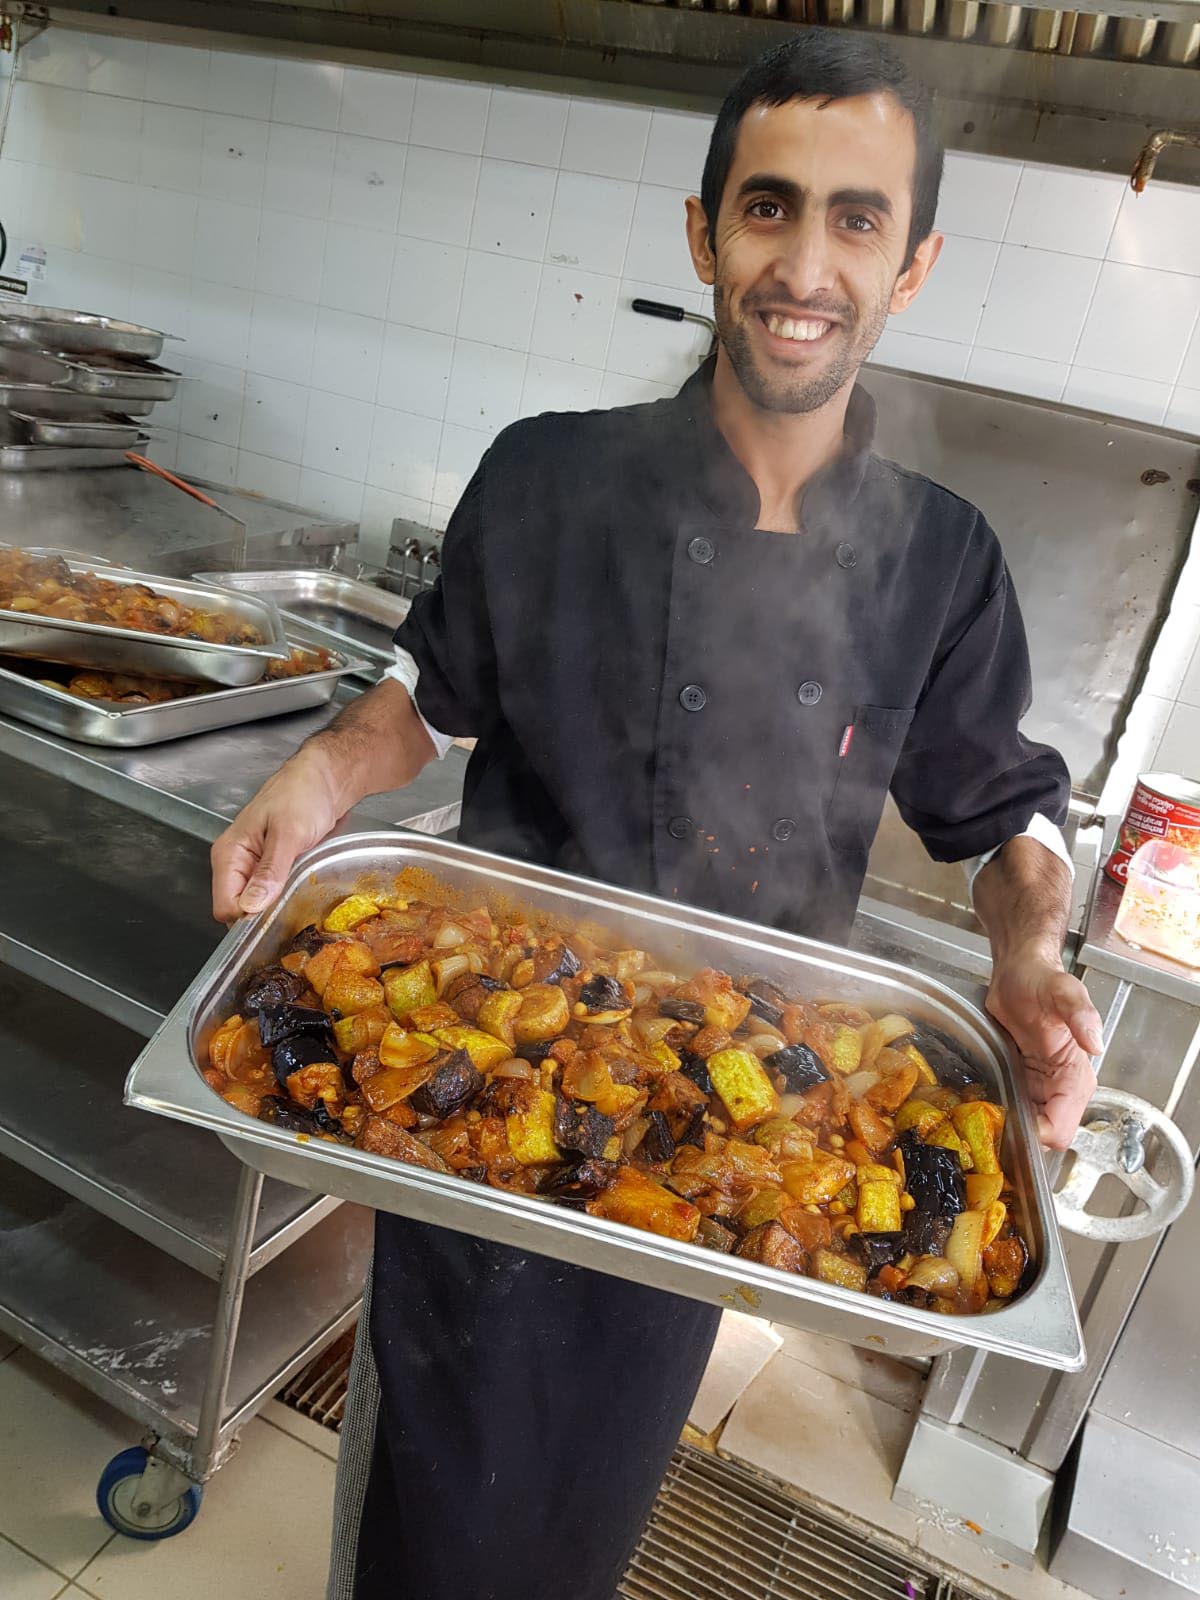 השף אמג'ד במטבח בקיבוץ שריד (התמונה באדיבות המצולם)